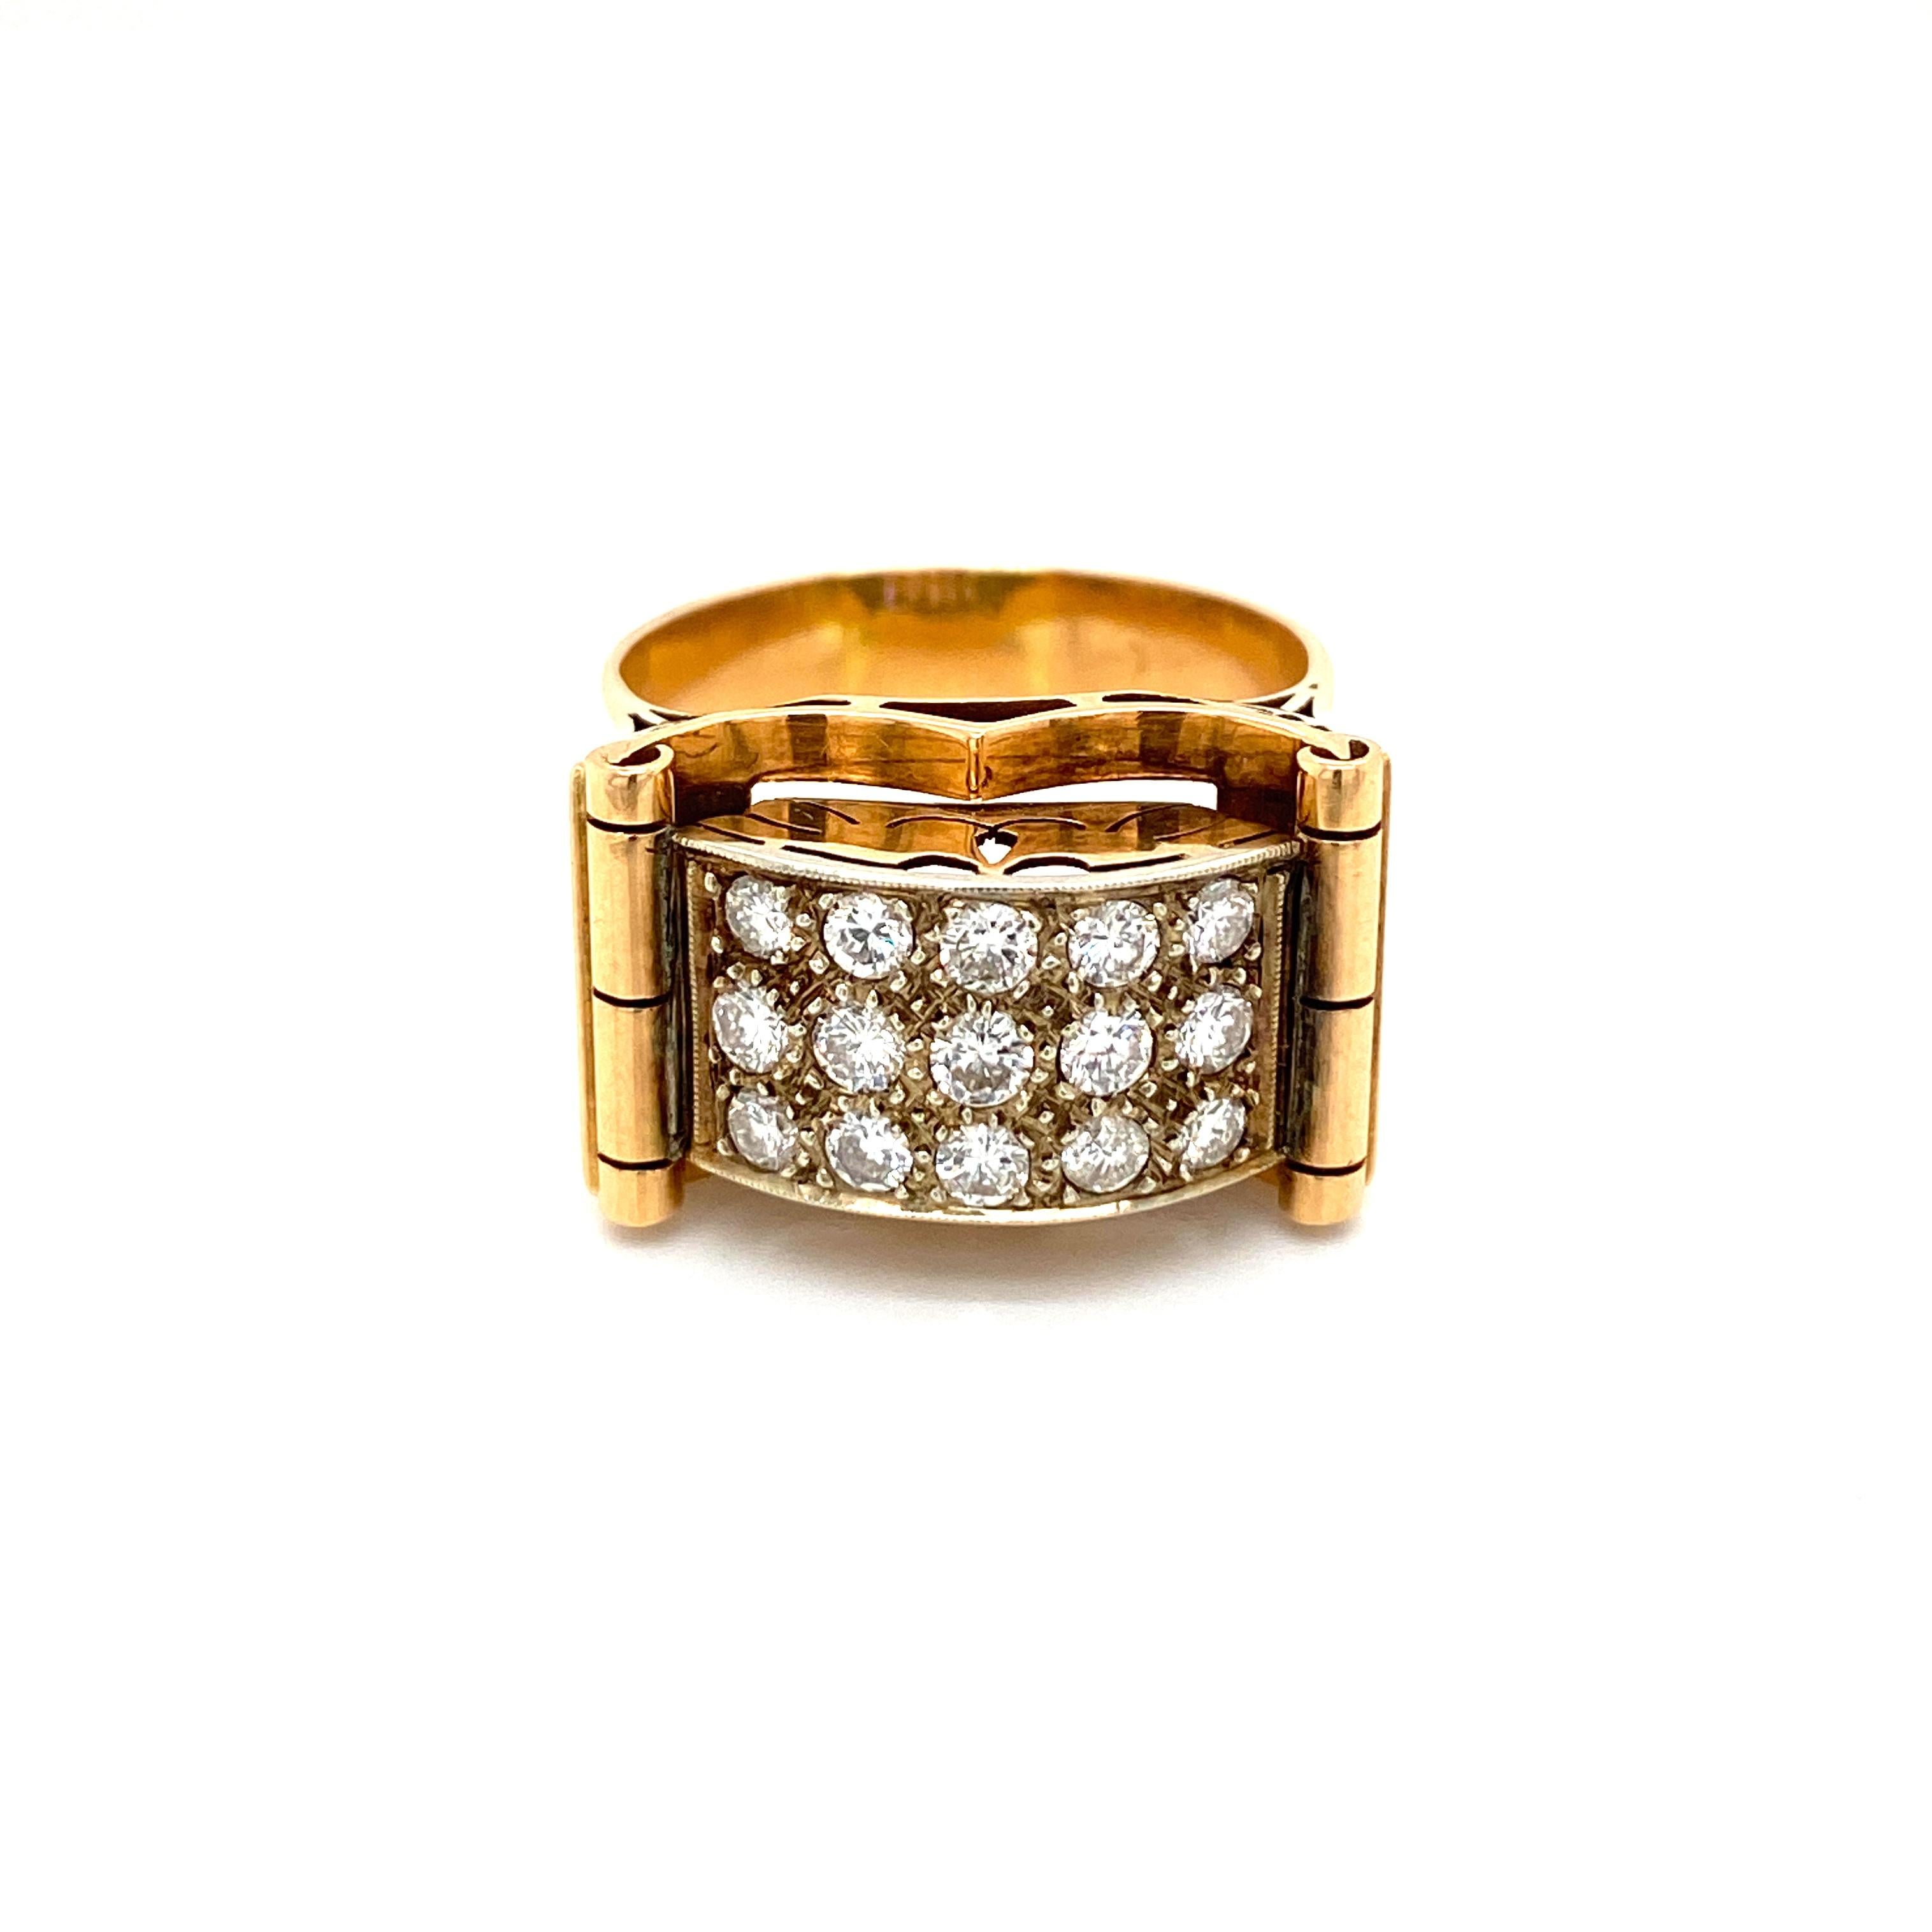 Eine feine antike 1,50 Karat Diamanten 18 Karat Gelbgold Kleid Ring.
Die funkelnden Diamanten mit europäischem Schliff in Pflasterfassung sind mit der Farbe G und der Reinheit V bewertet.
Herkunft Italien 1930

ZUSTAND: Gebraucht -